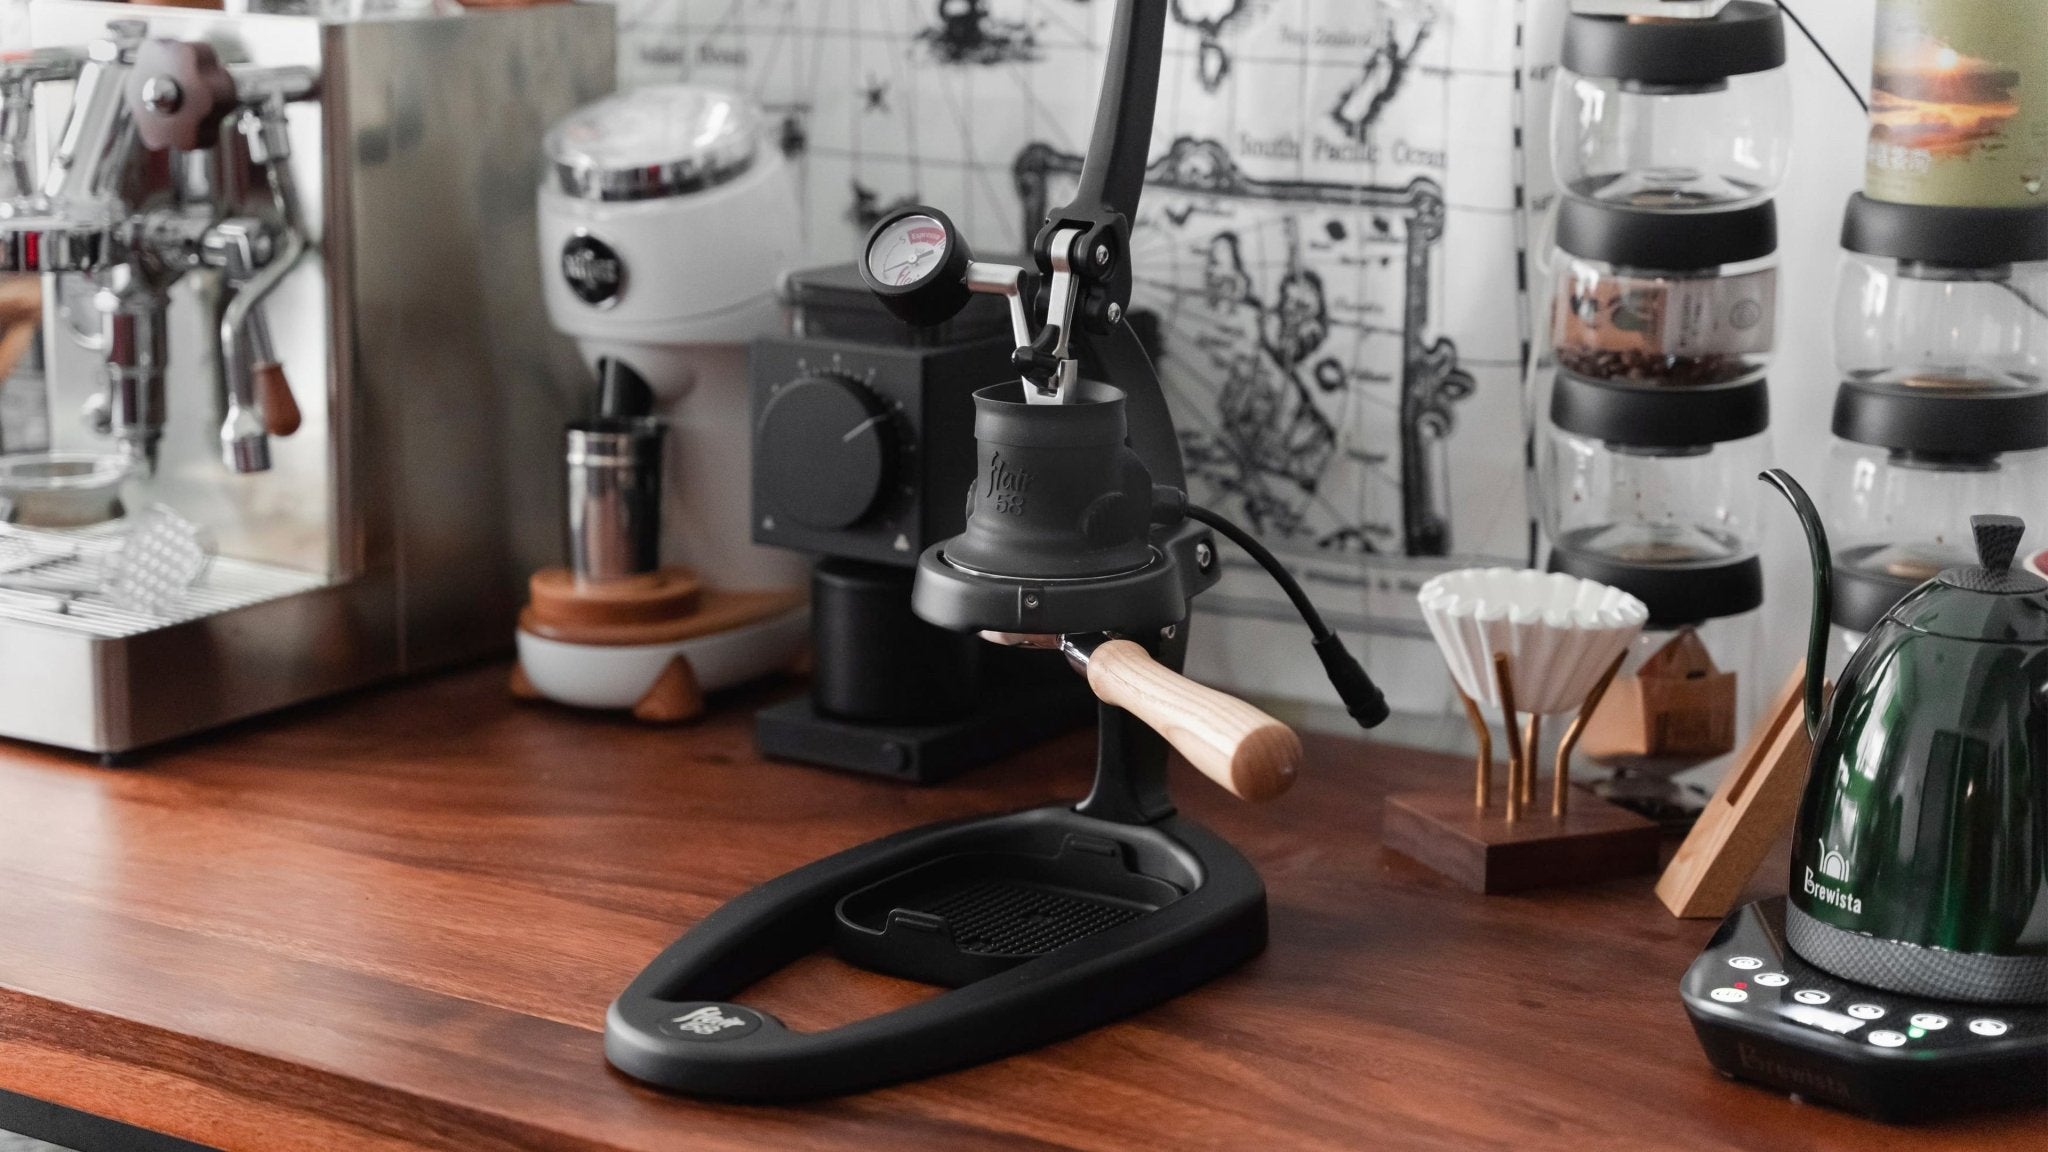 【半年使用心得】Flair 58 Espresso 評測分享 - 咖啡器材推薦 - Coffee Stage 咖啡舞台